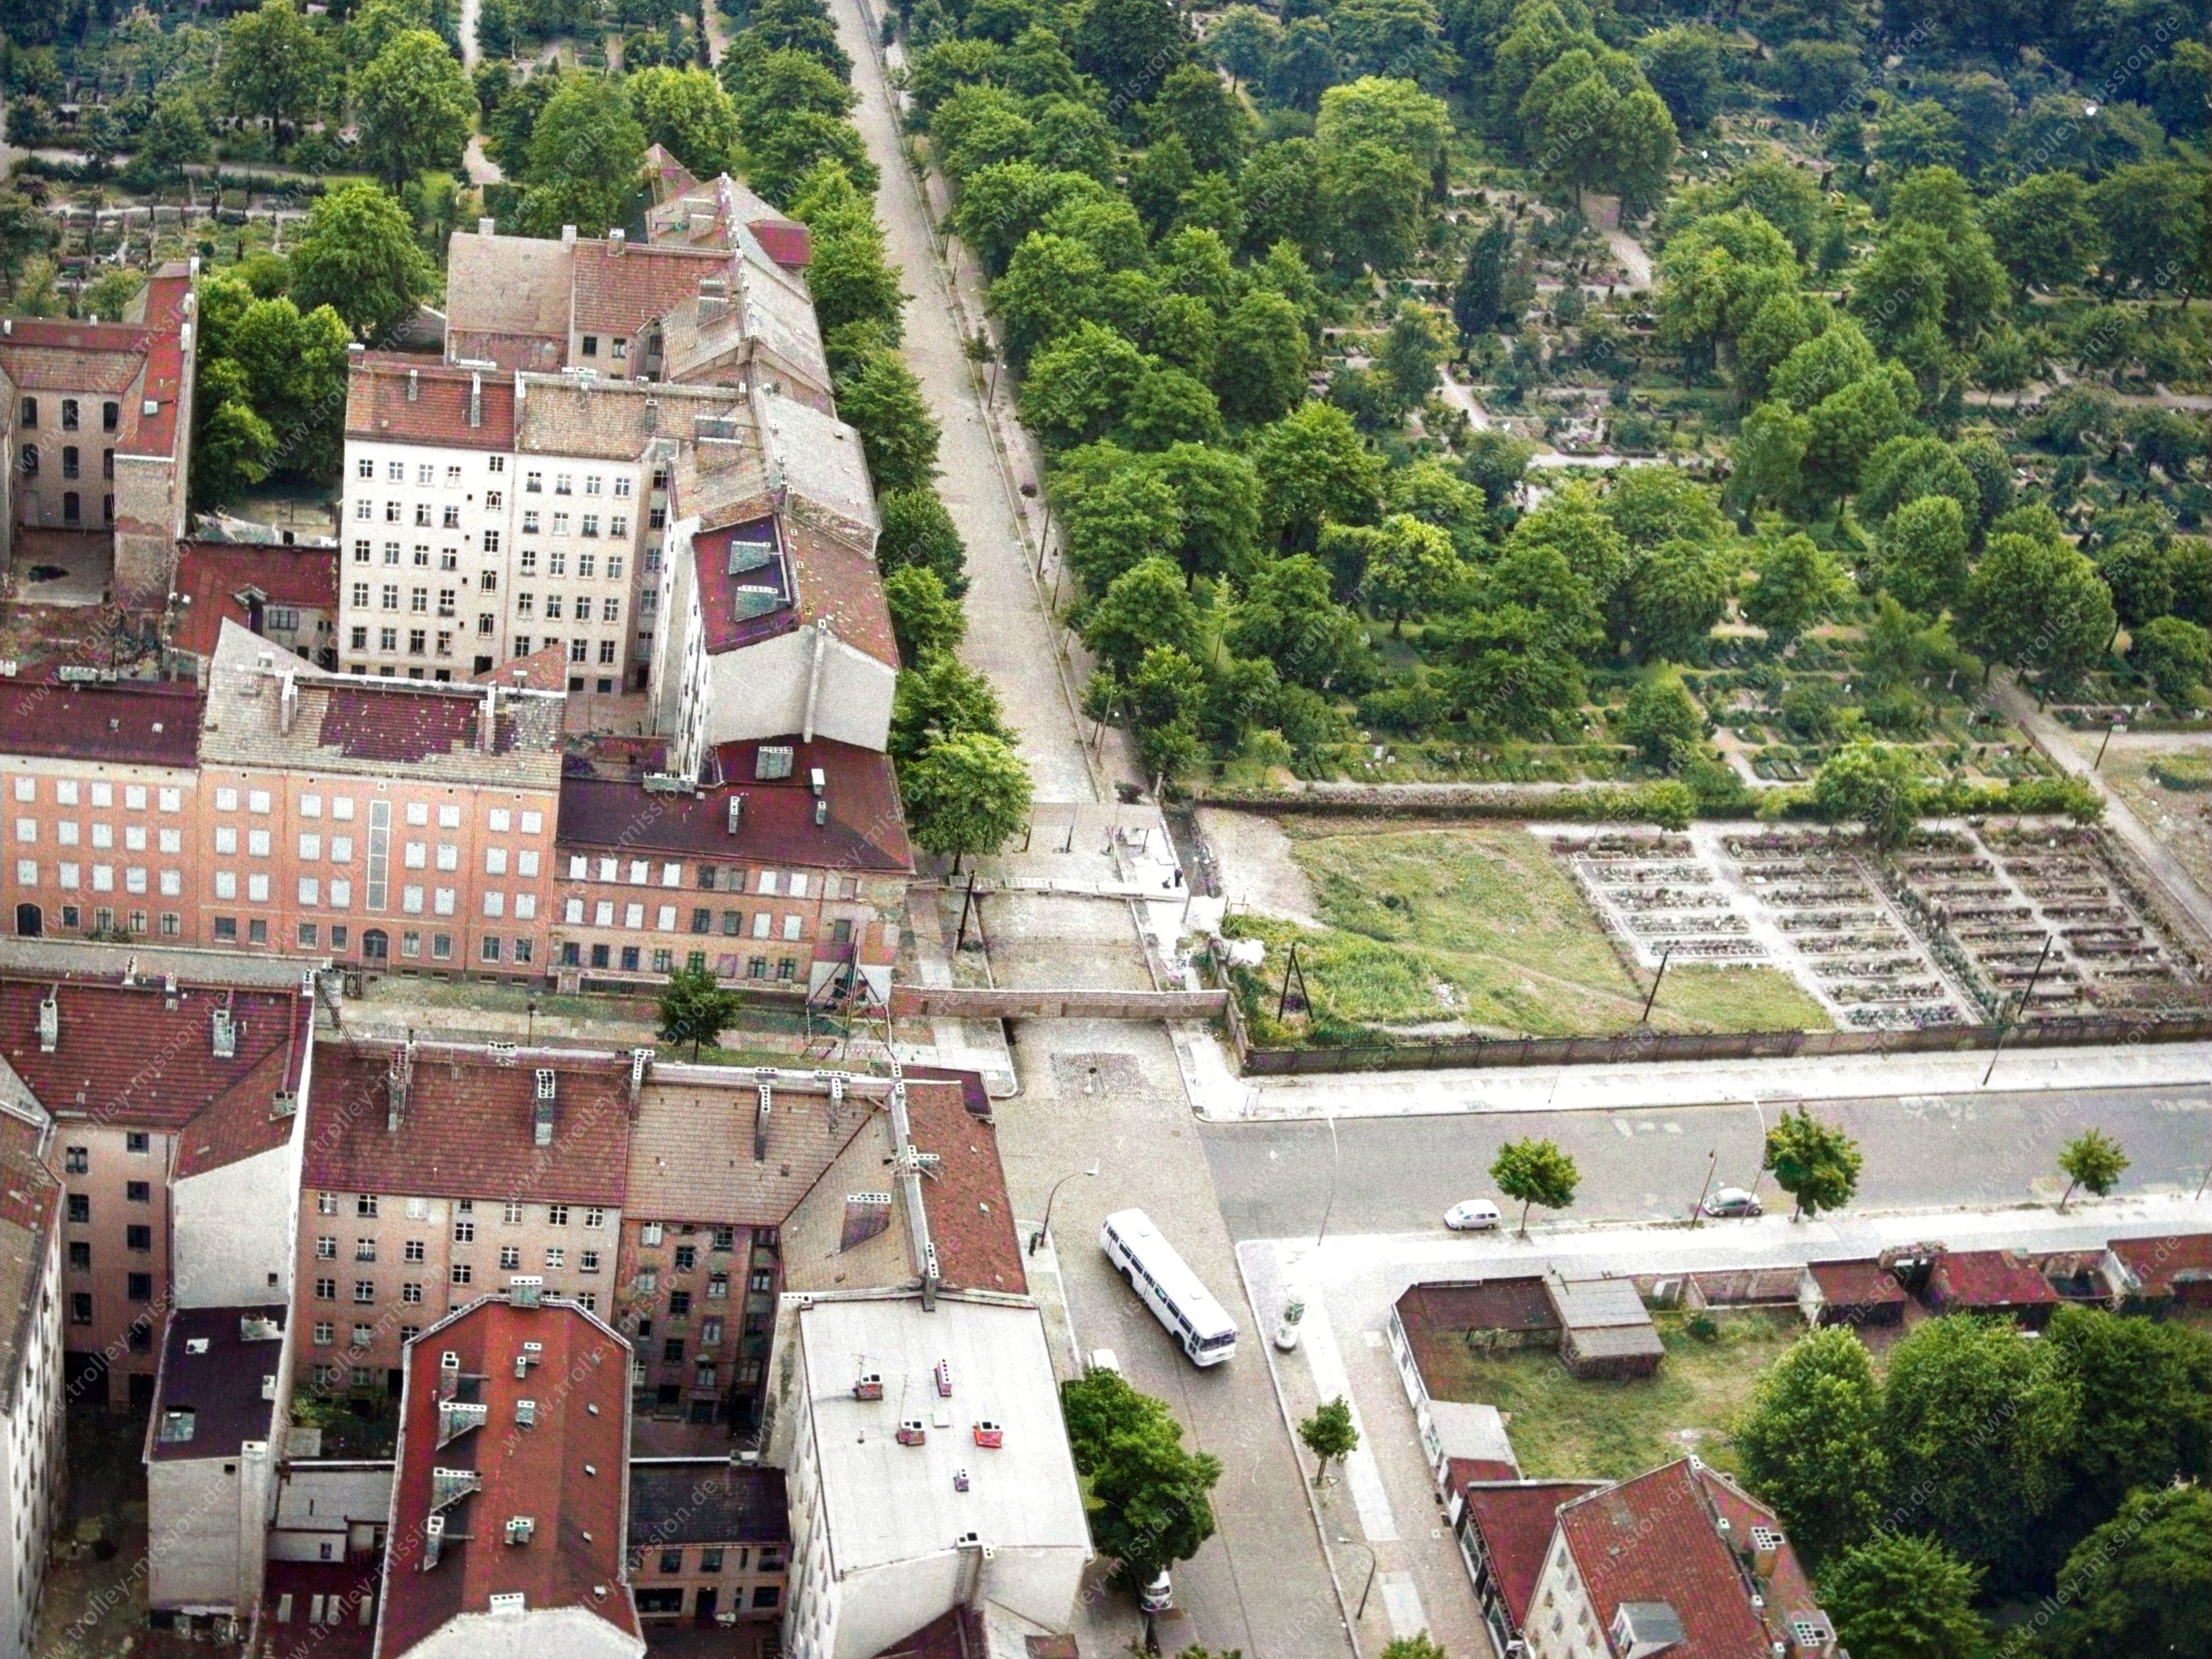 Die Luftaufnahme zeigt die Ackerstraße, die von unten nach oben durch das Bild verläuft und dabei die Bernauer Straße kreuzt.